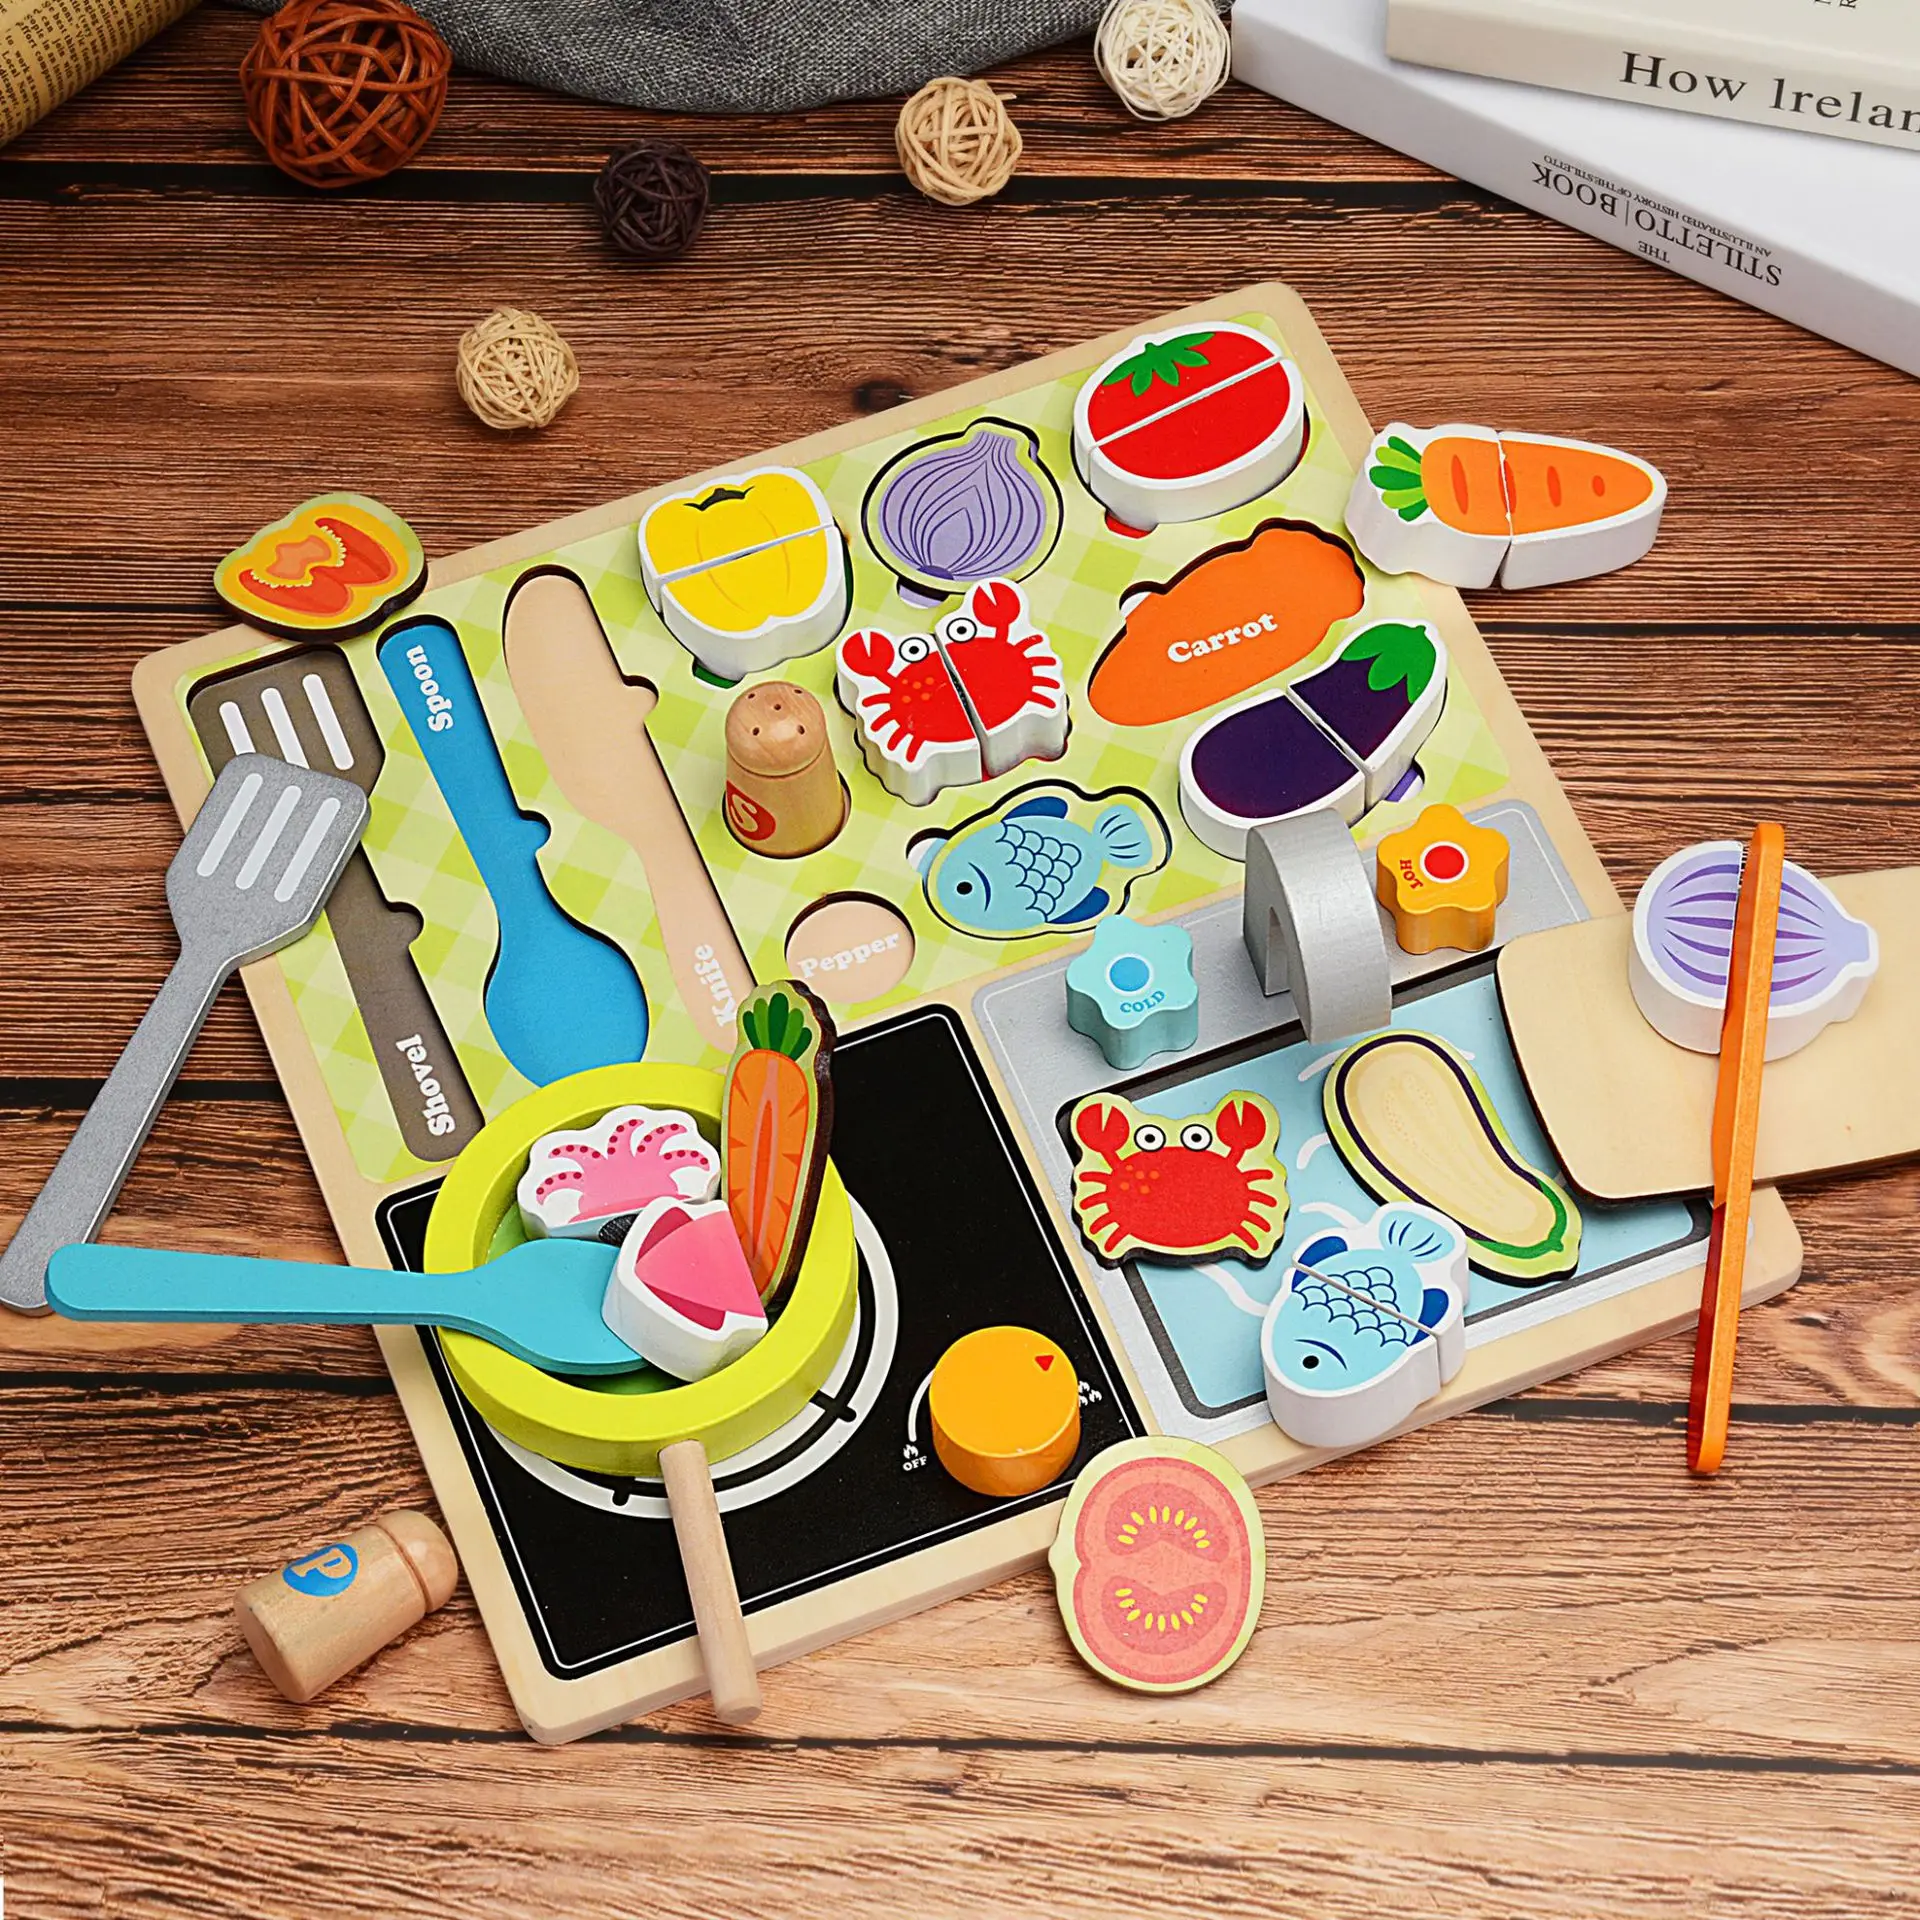 Детская игрушка Kithchen, настоящая жизнь, косплей, барбекю, резка фруктов, овощей, деревянная игрушка, ролевые игры, детская развивающая игрушка